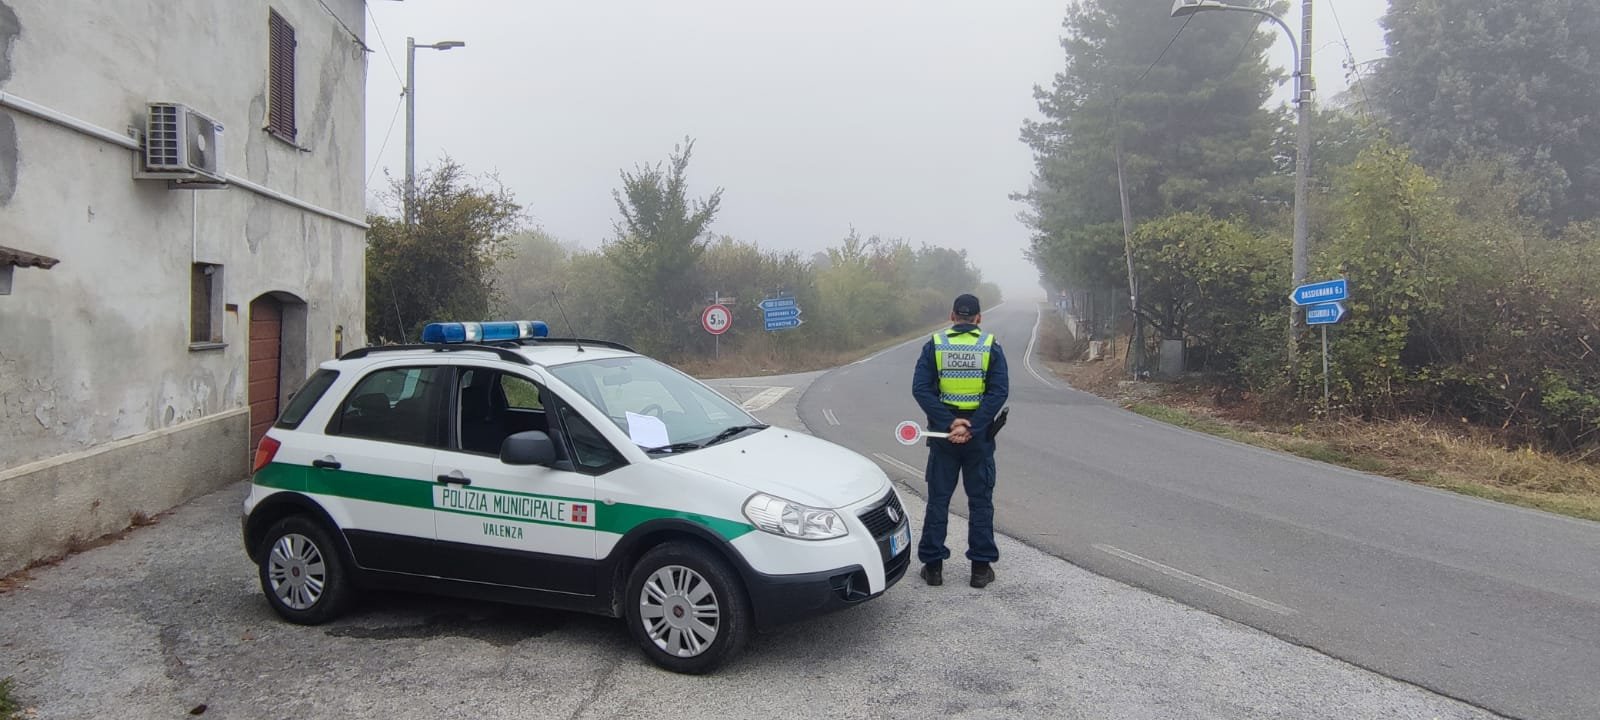 La Polizia Locale di Valenza aiuta anche Bassignana: un accordo per estendere i servizi